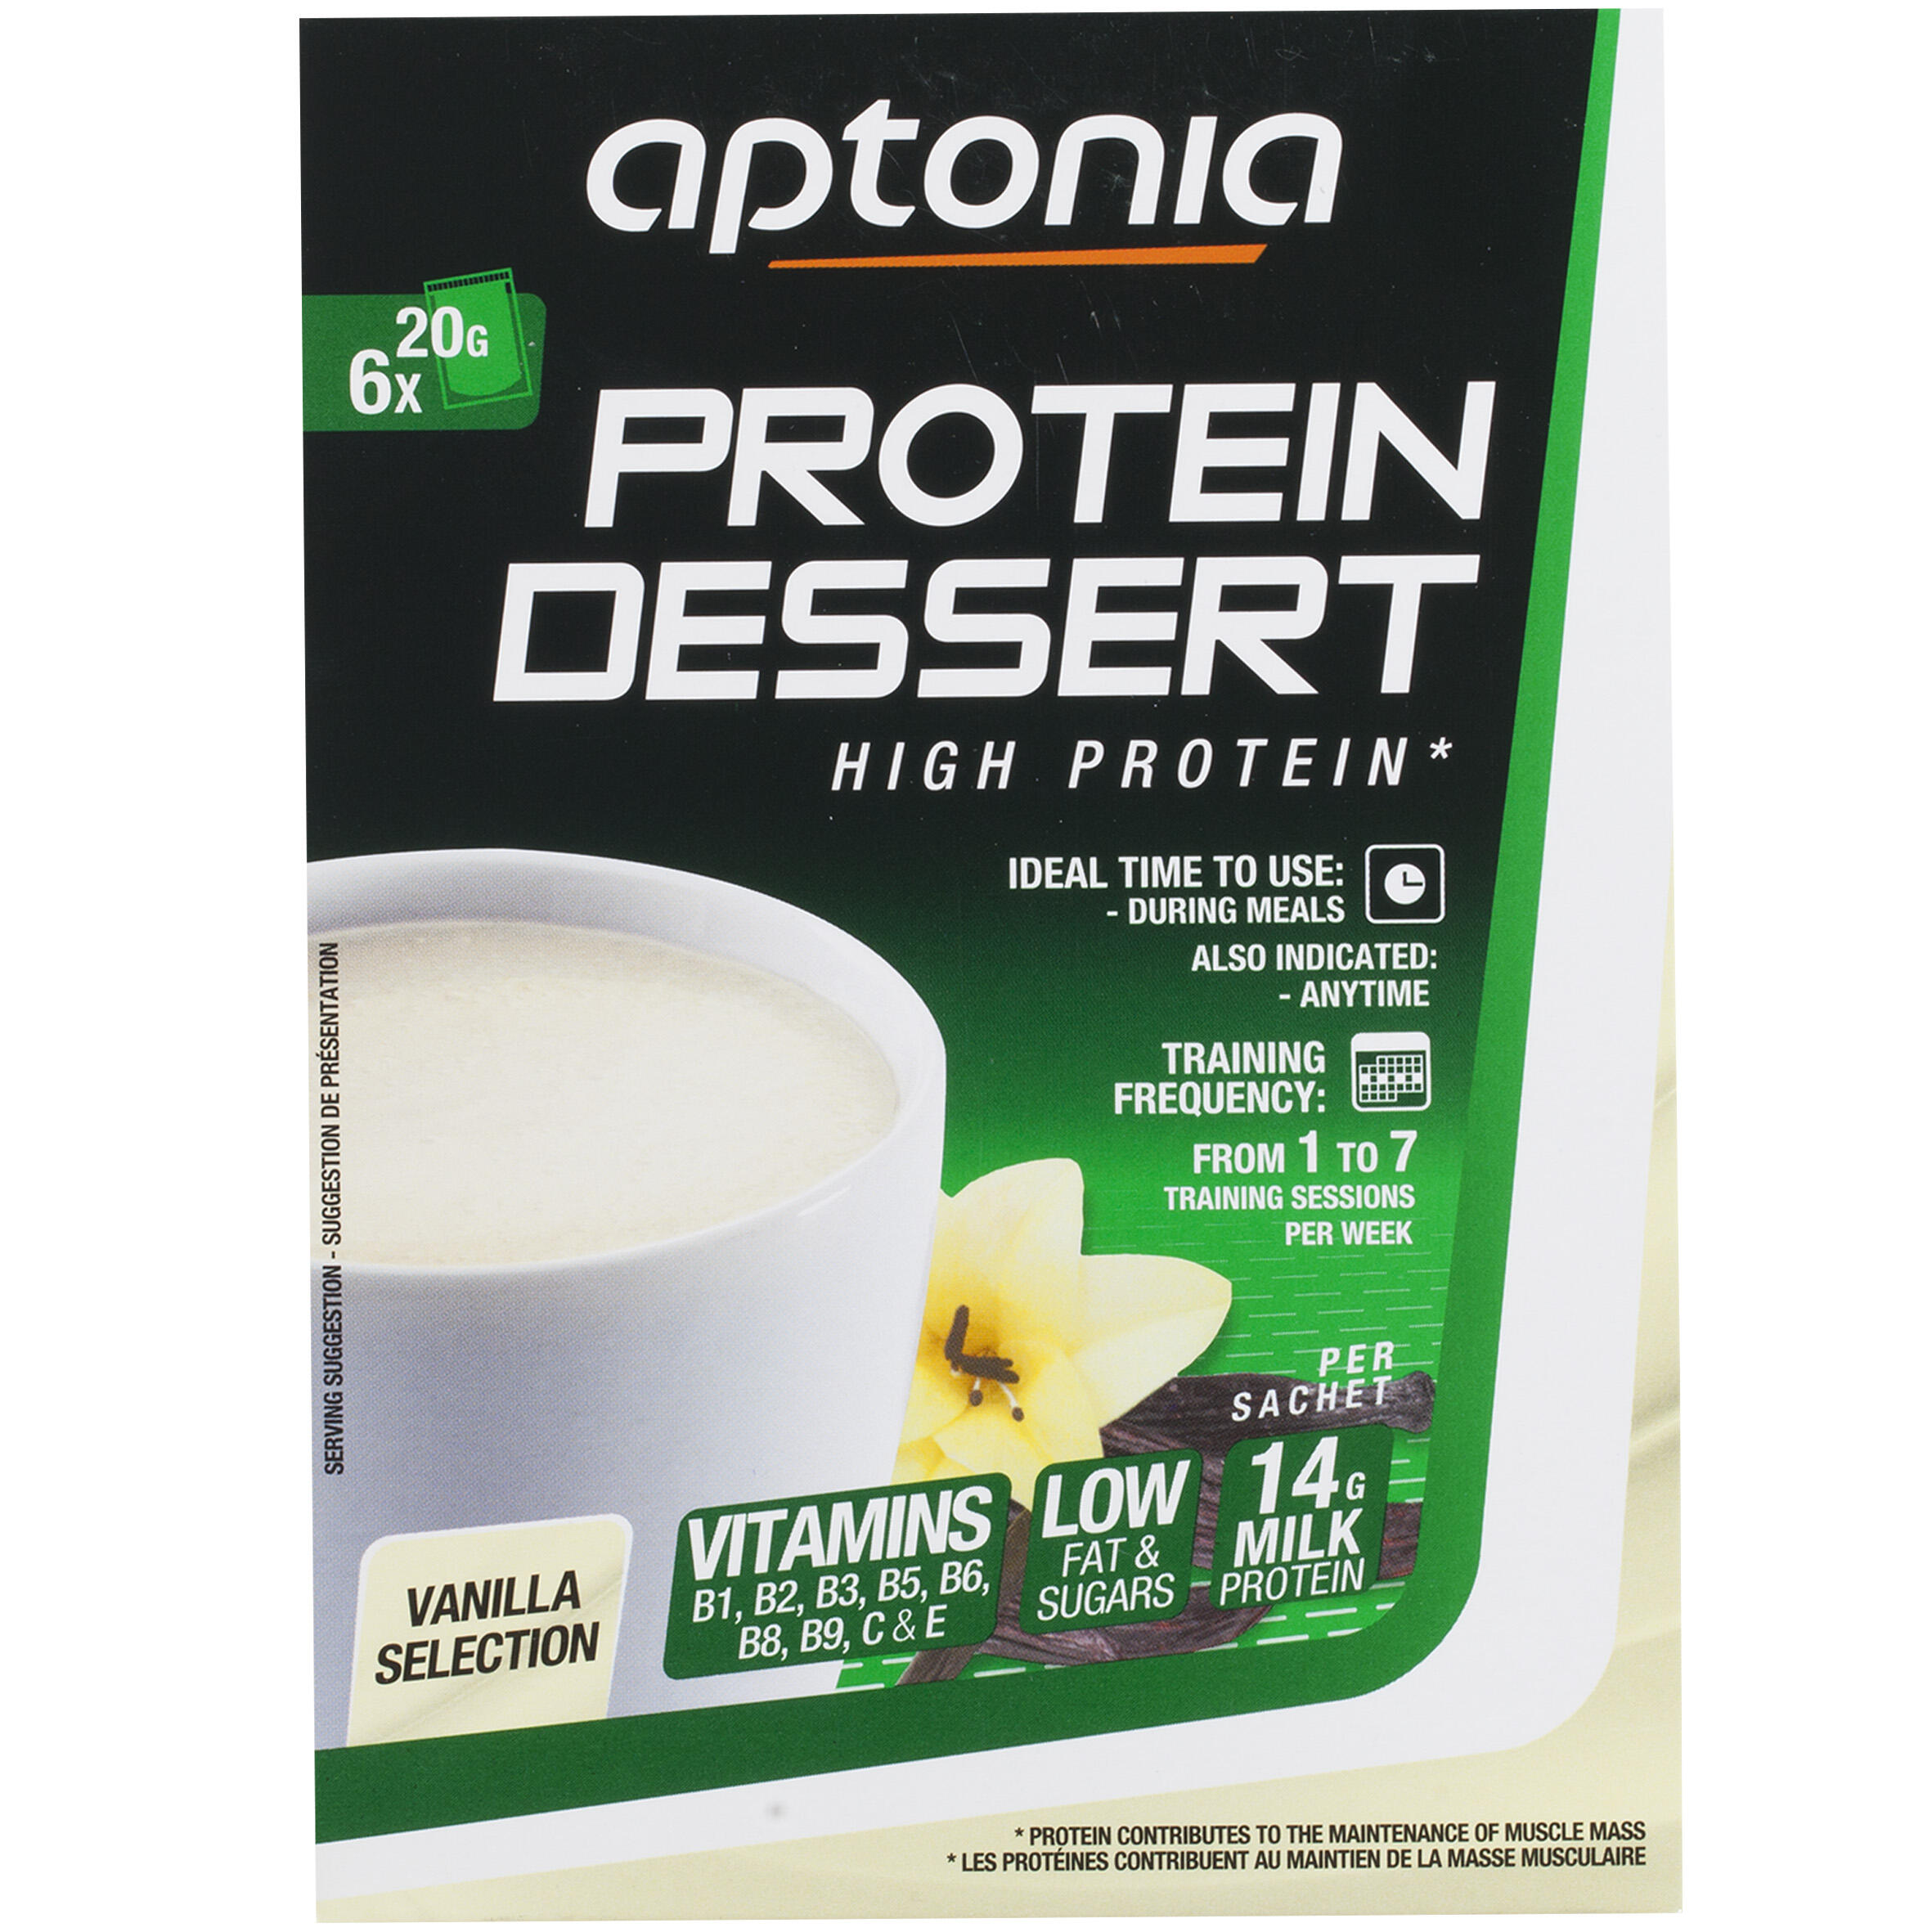 Protein Dessert Low Calorie High Protein Snack 6x20g - Vanilla 1/6